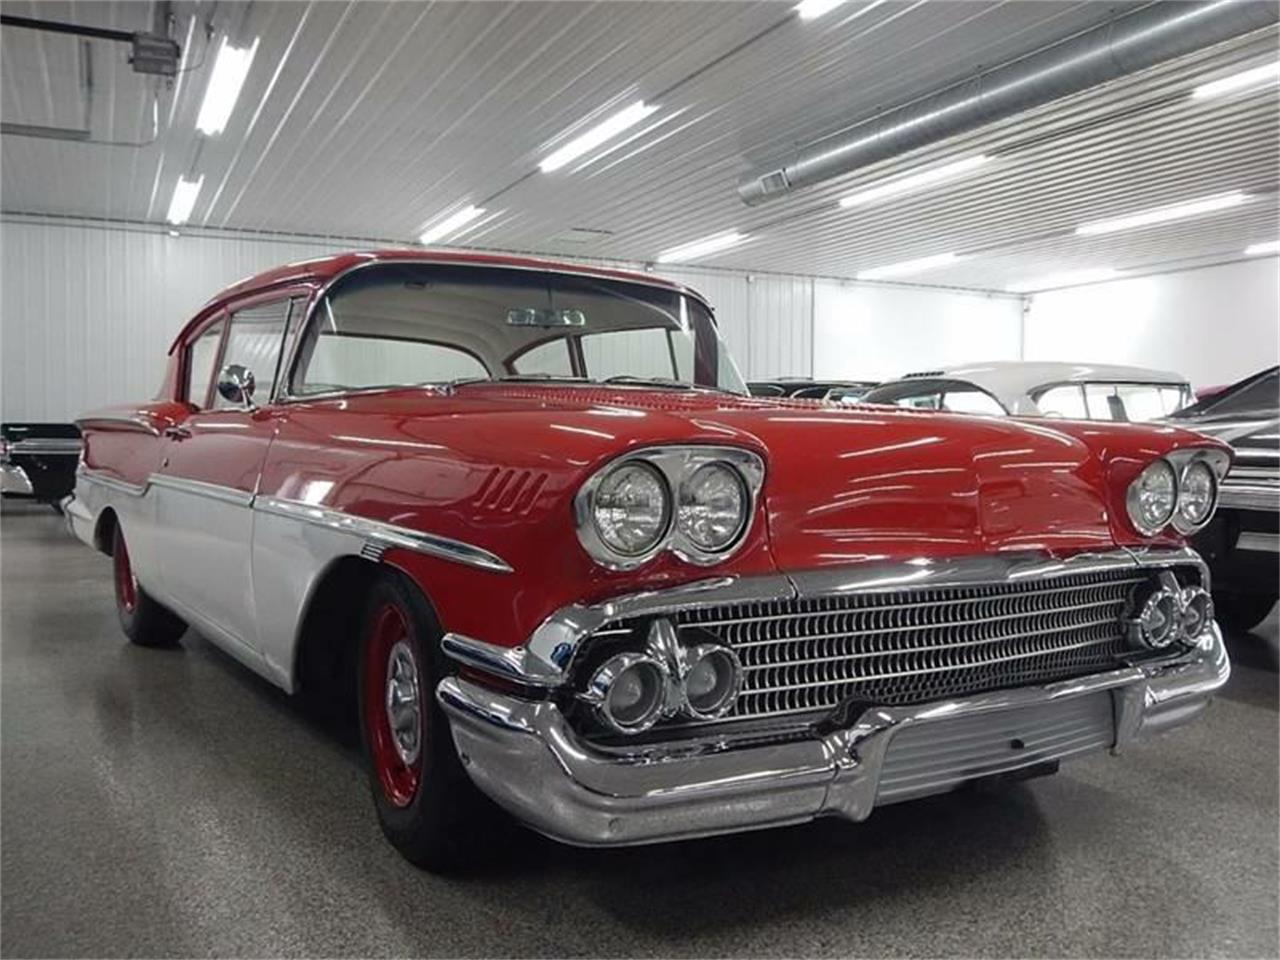 For Sale: 1958 Chevrolet Delray in Celina, Ohio.